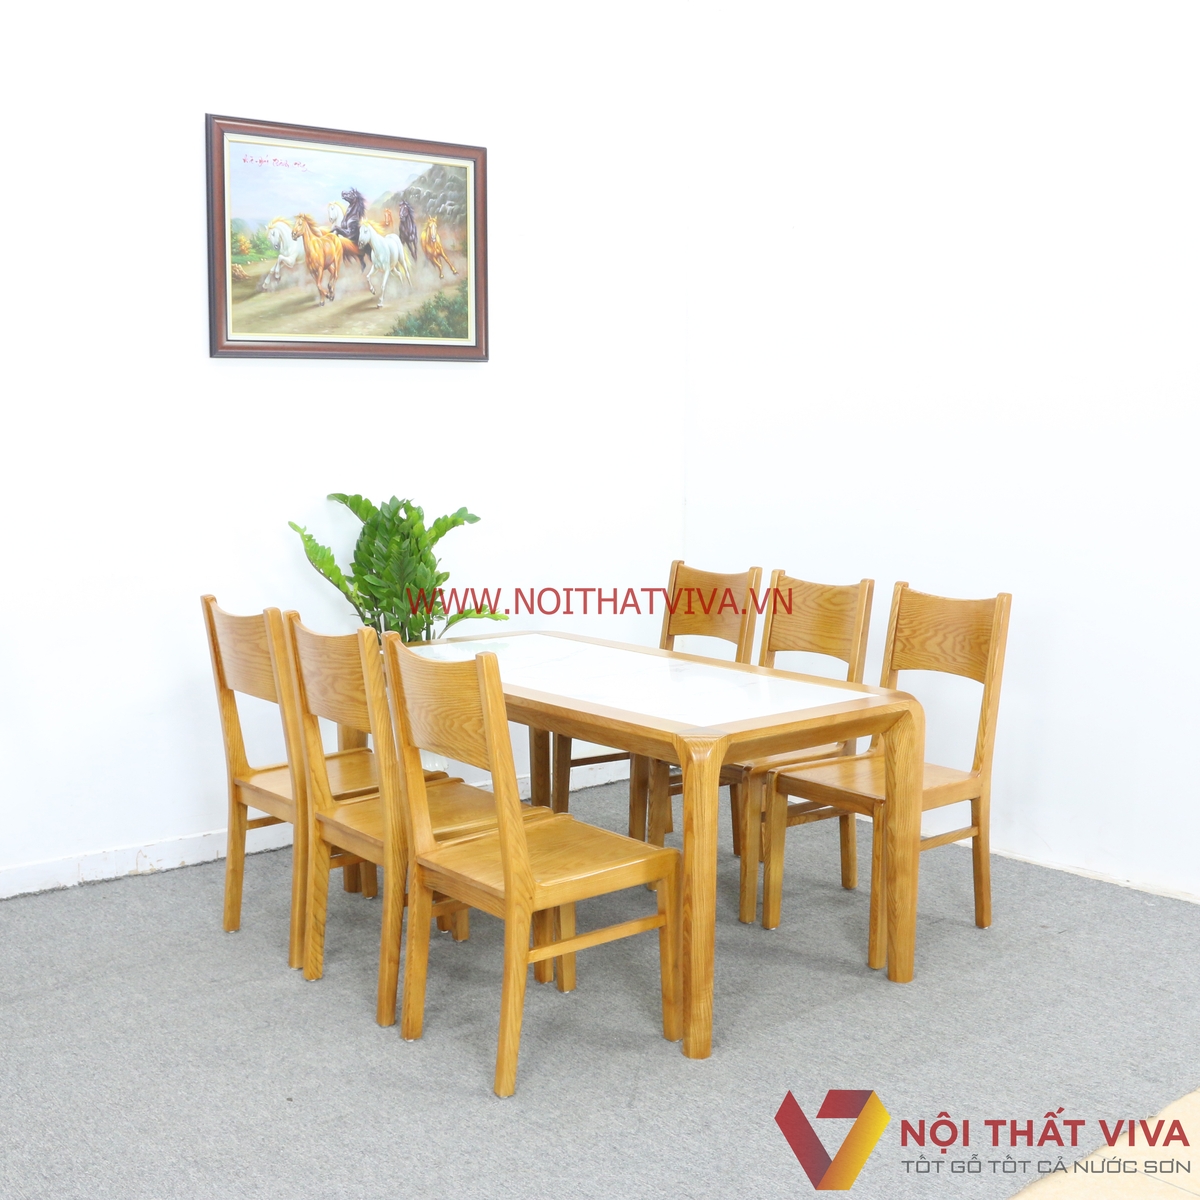 Top 4 bộ bàn ăn mặt đá gỗ sồi cao cấp mẫu mới nhất tại Nội thất Viva